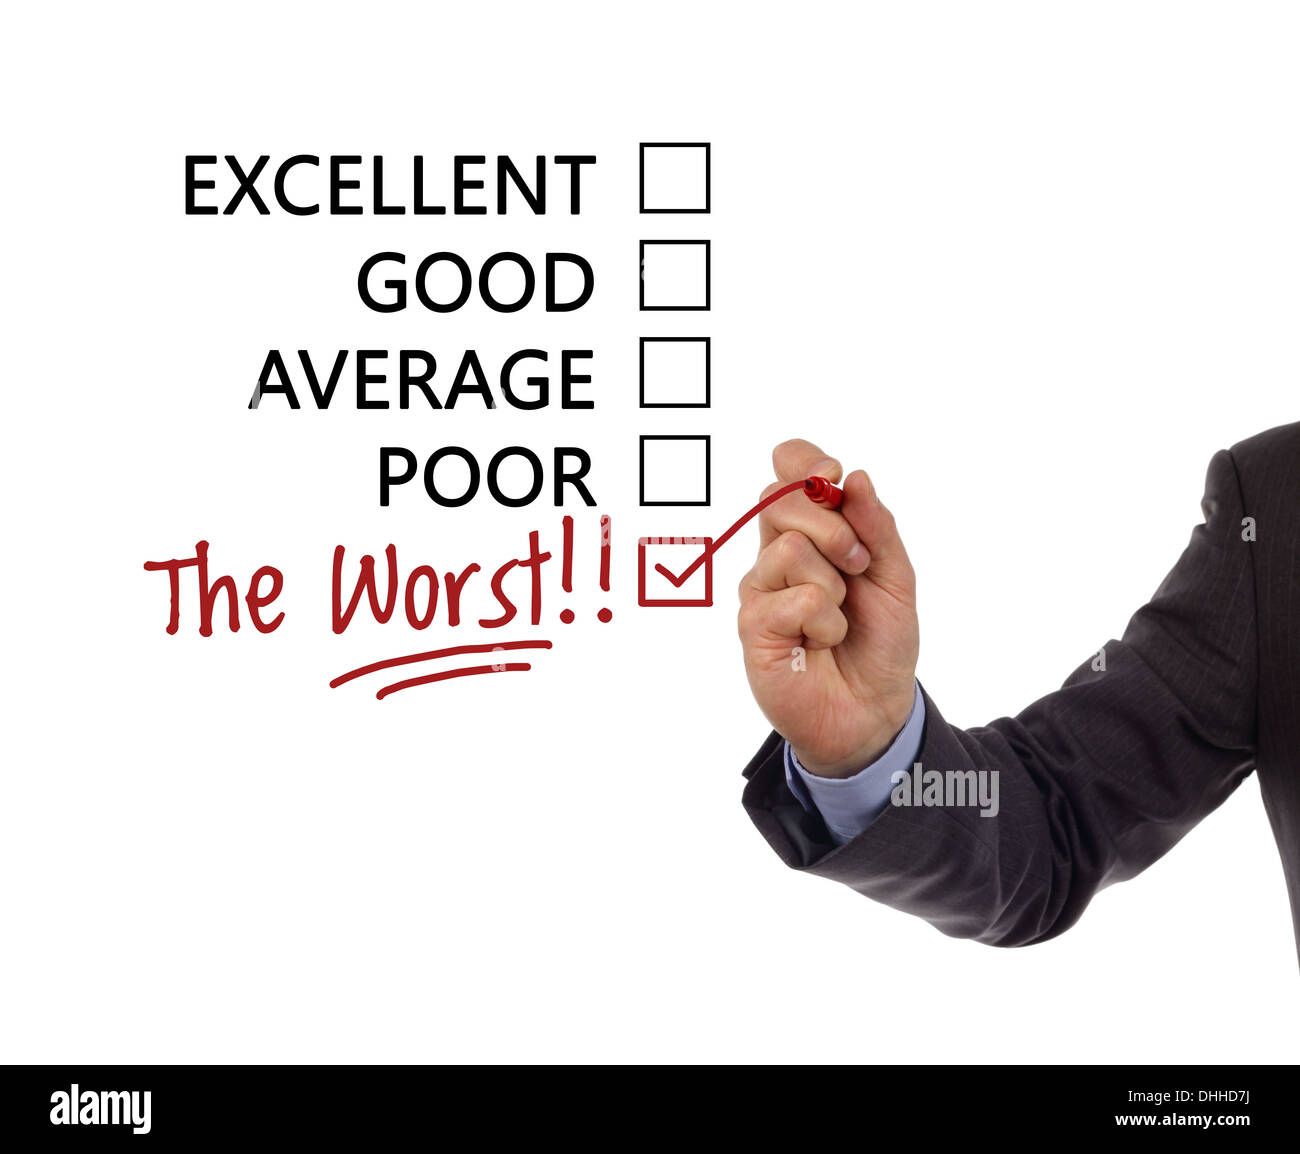 Customer service satisfaction survey Stock Photo